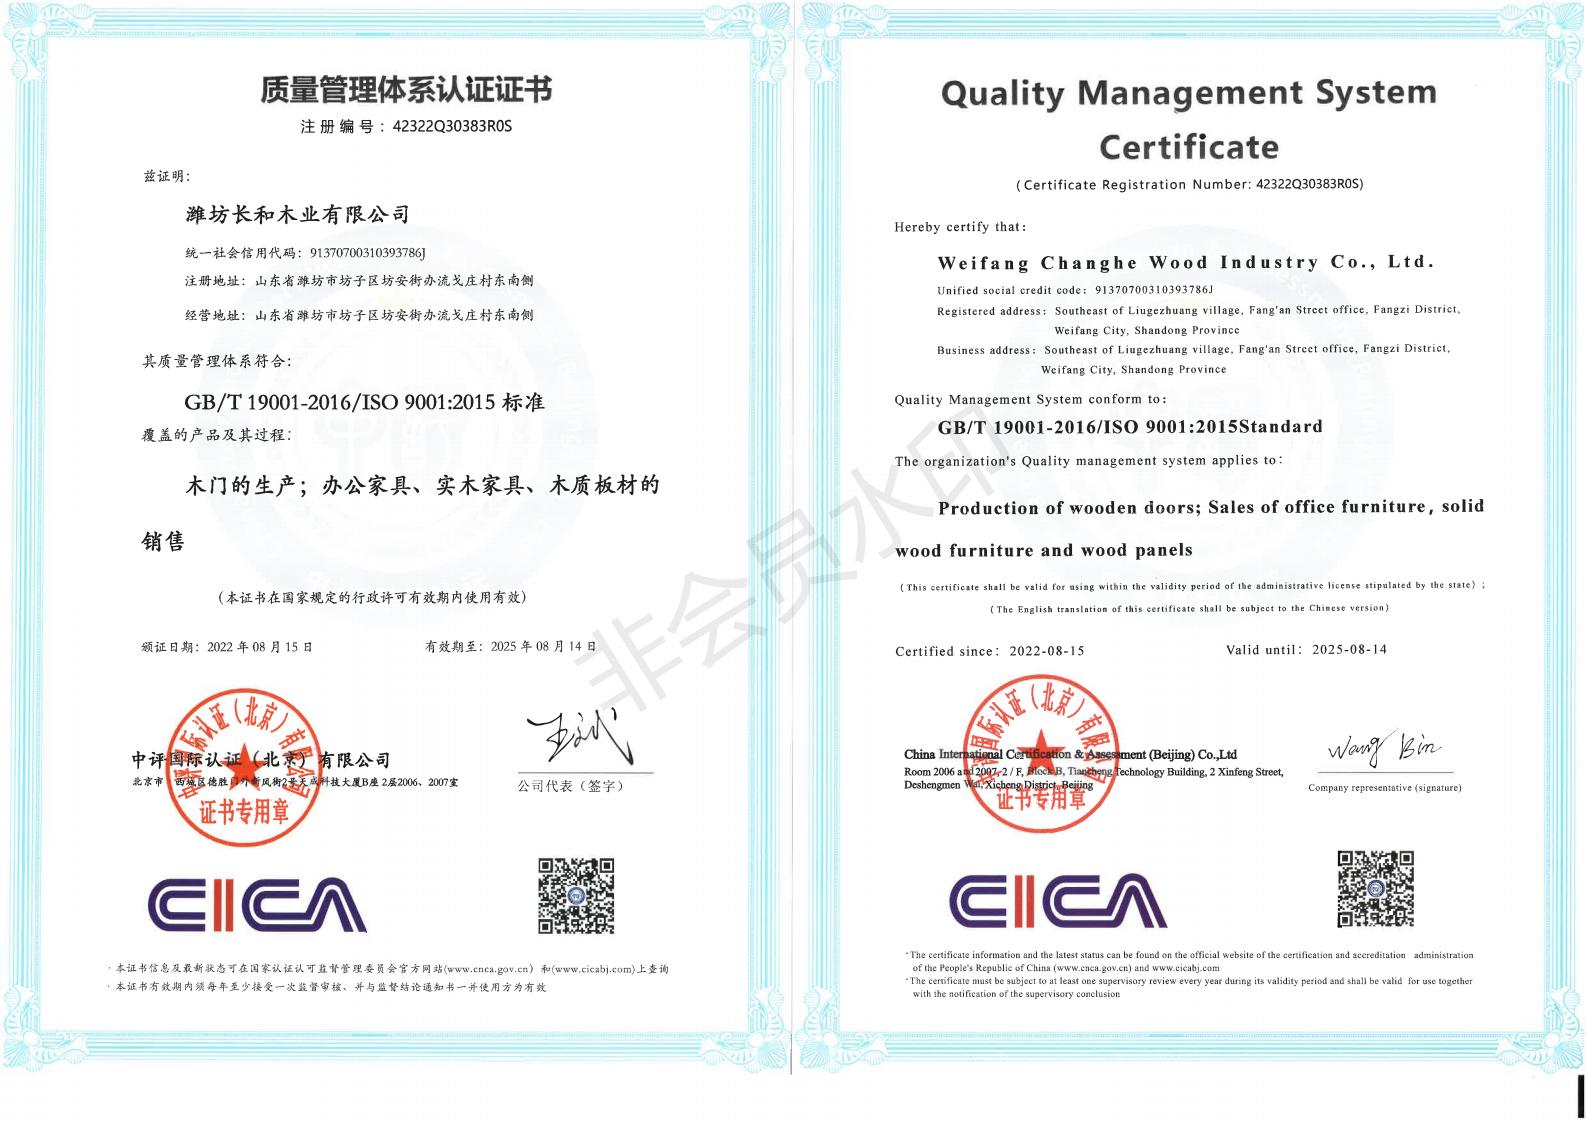 潍坊长和木业有限公司Q中英文证书_00.jpg